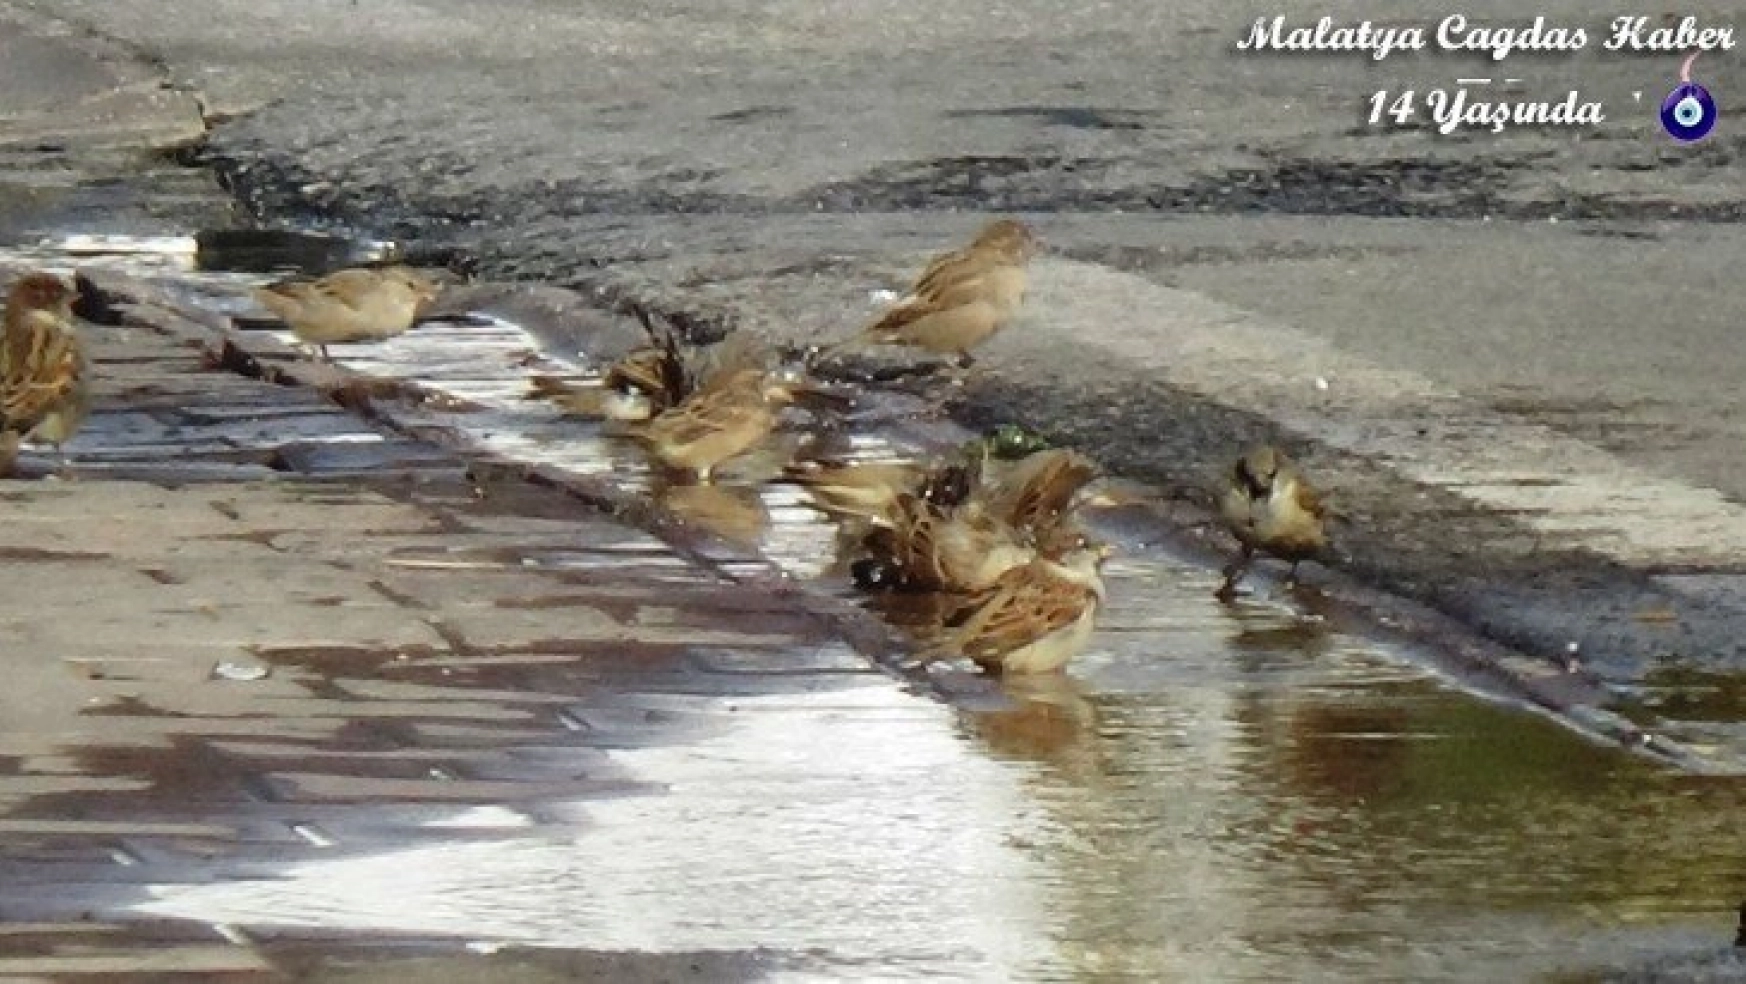 Patlayan su borusunu fırsat bilen kuşların keyfi